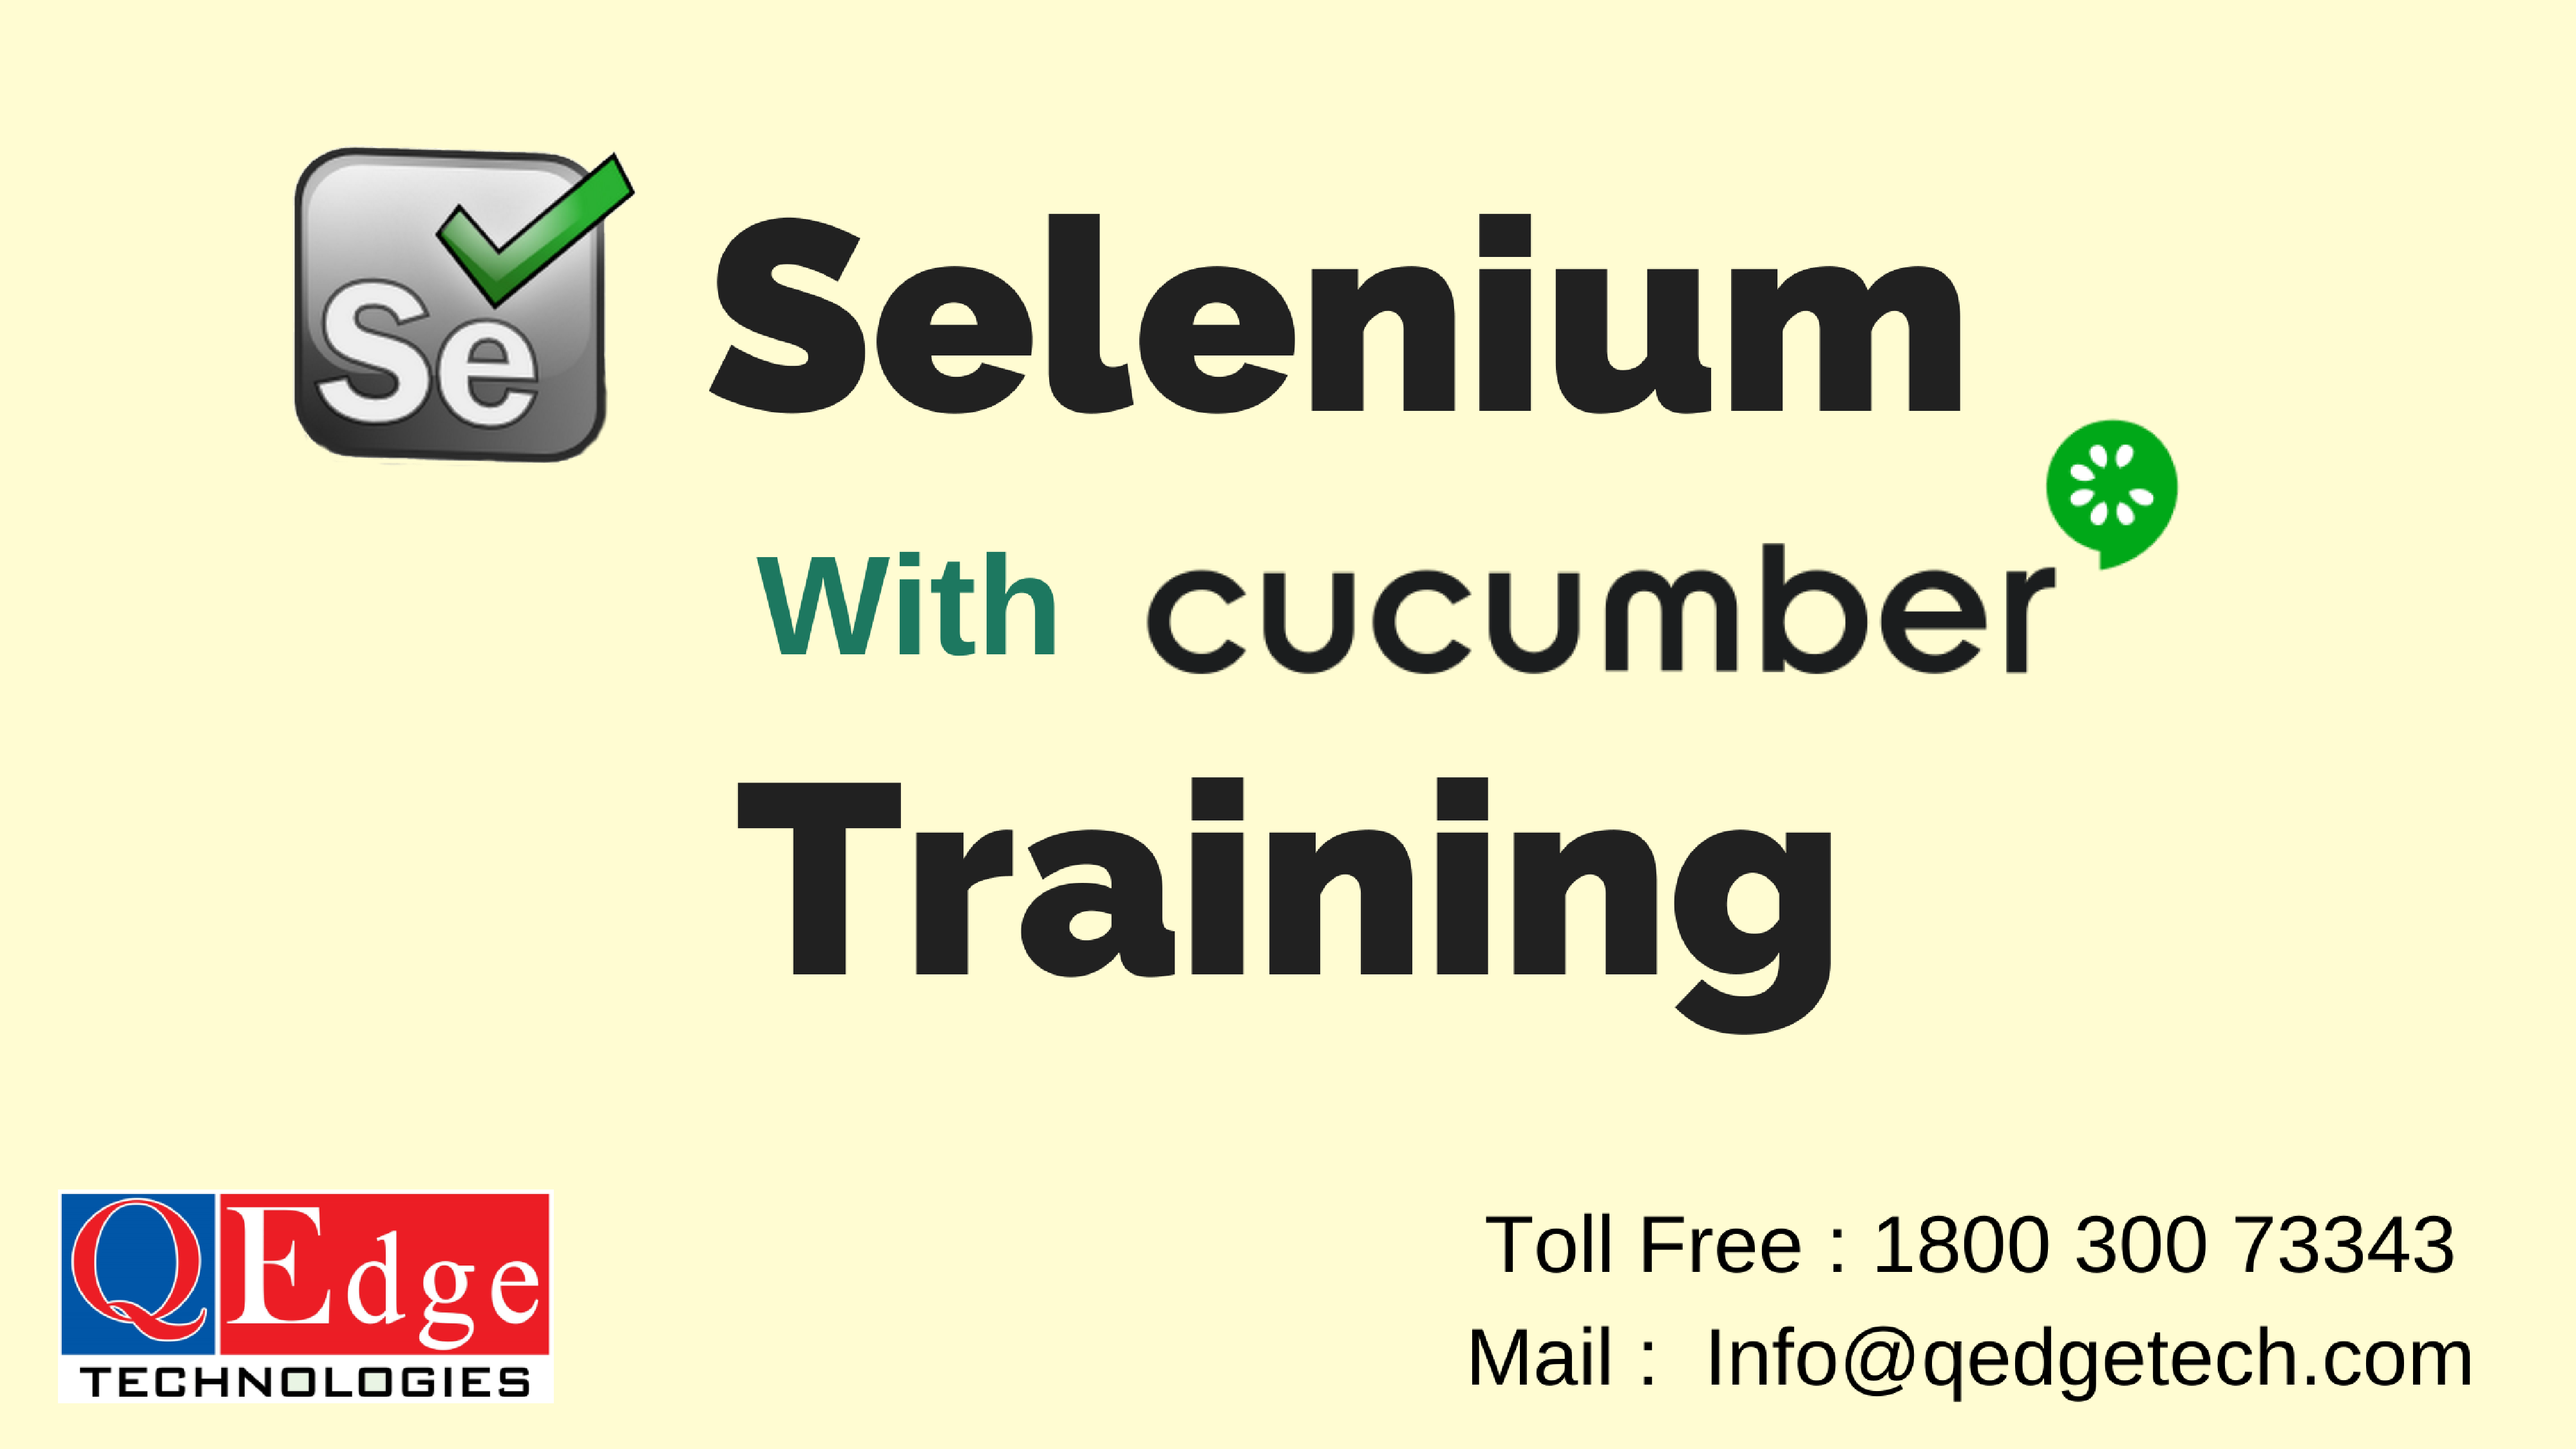 Selenium Online Training with Cucumber